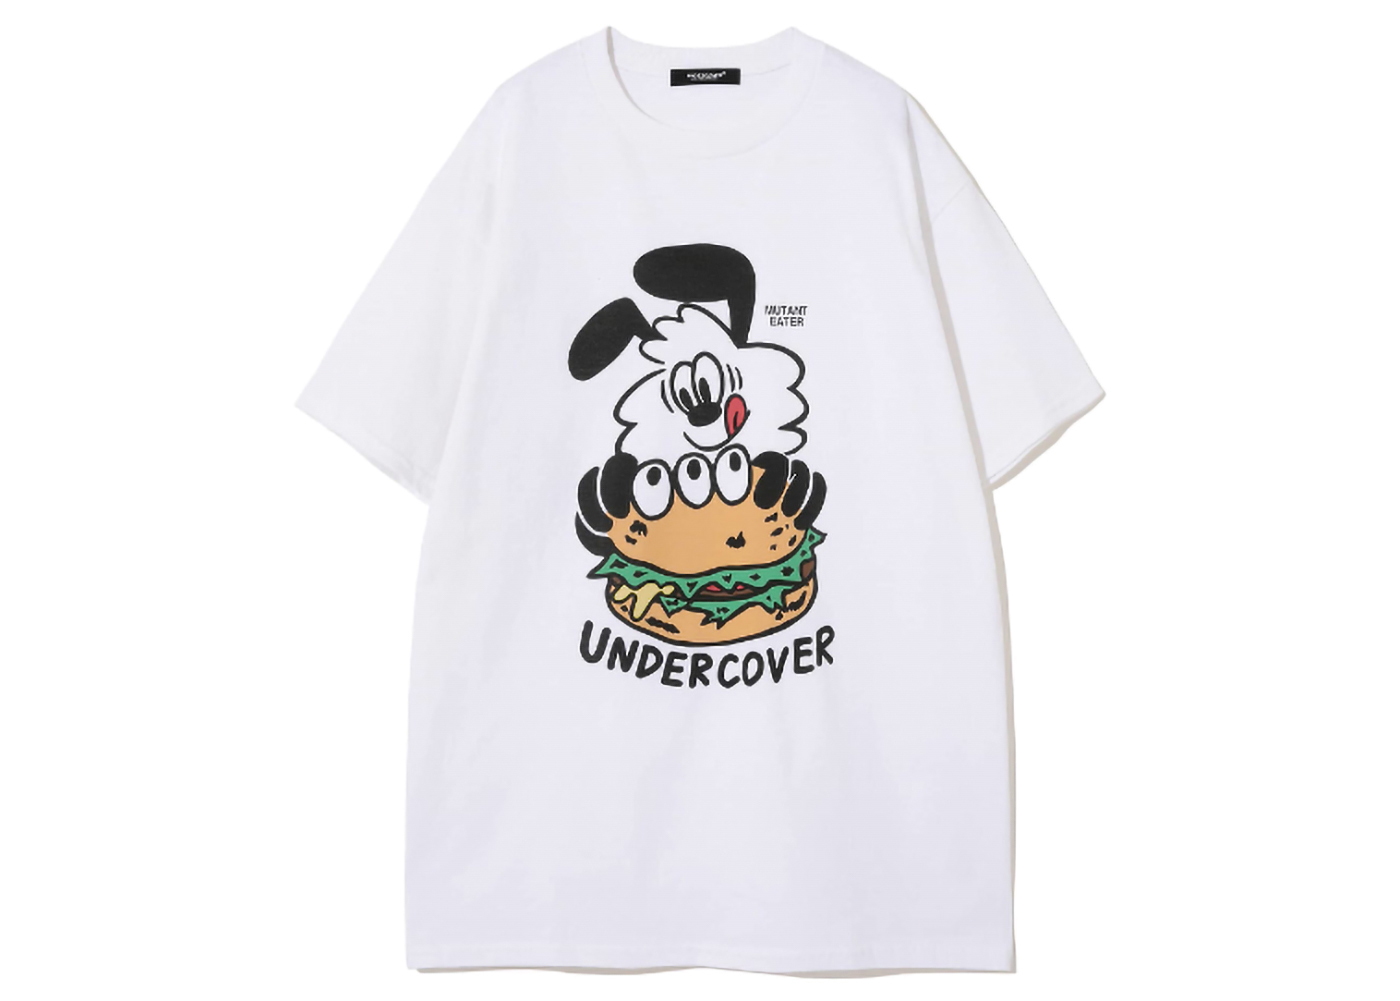 Undercover x Verdy Mutant Eater T-Shirt White Men's - SS23 - US